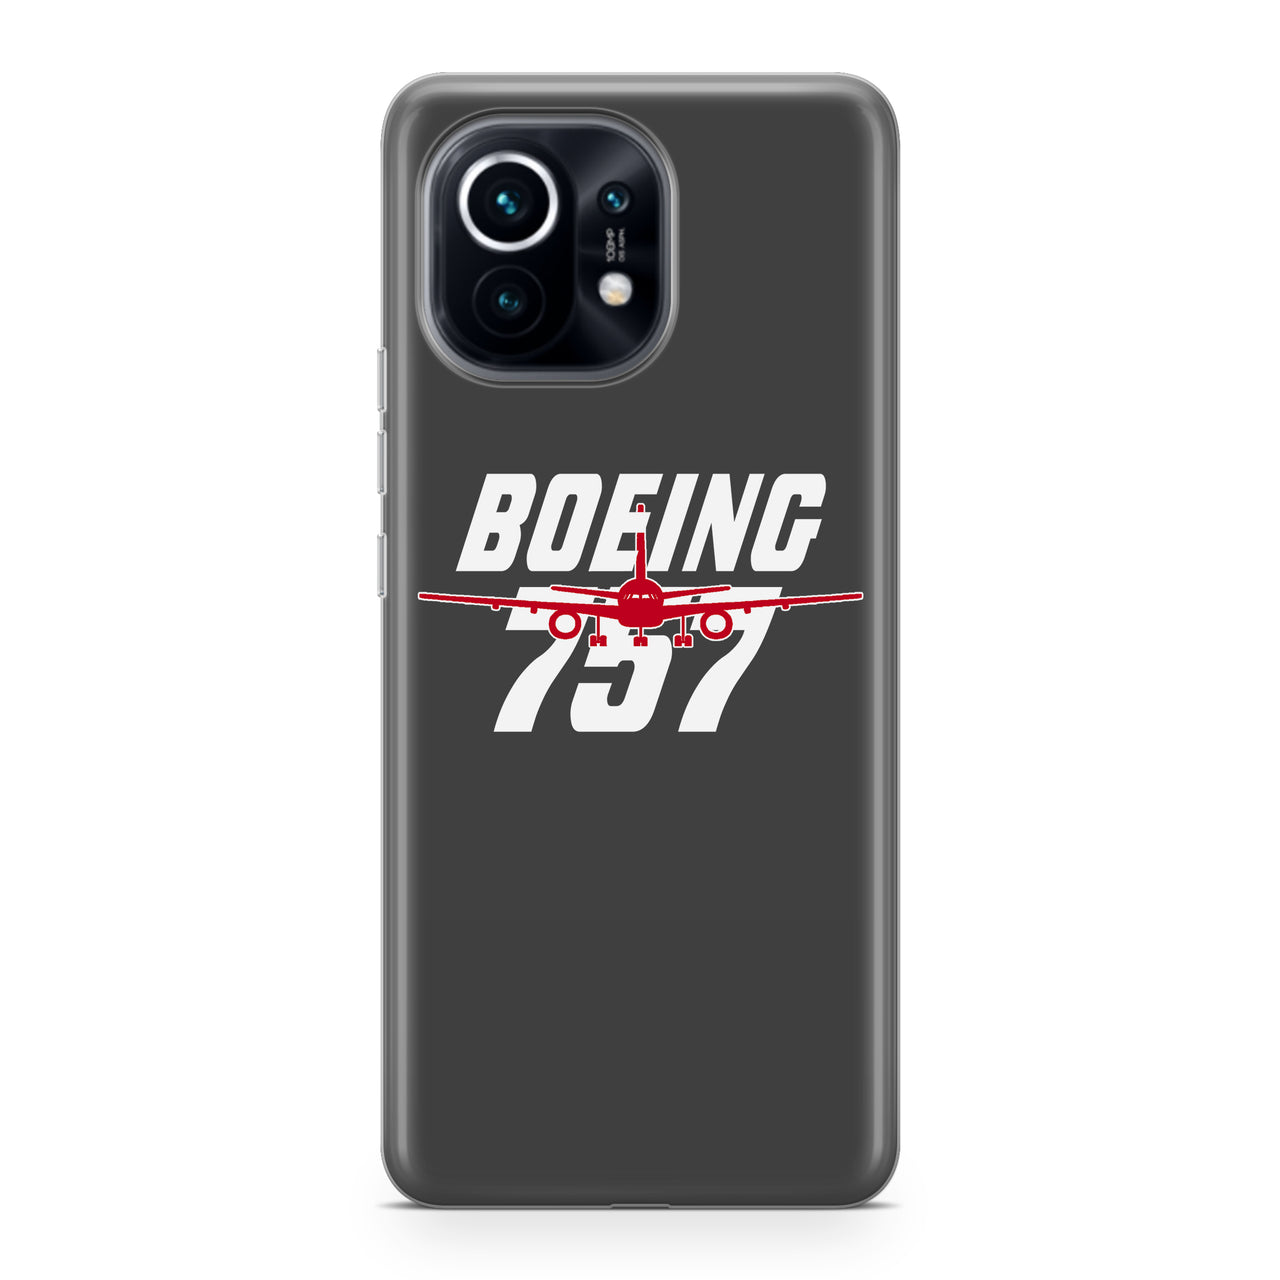 Amazing Boeing 757 Designed Xiaomi Cases